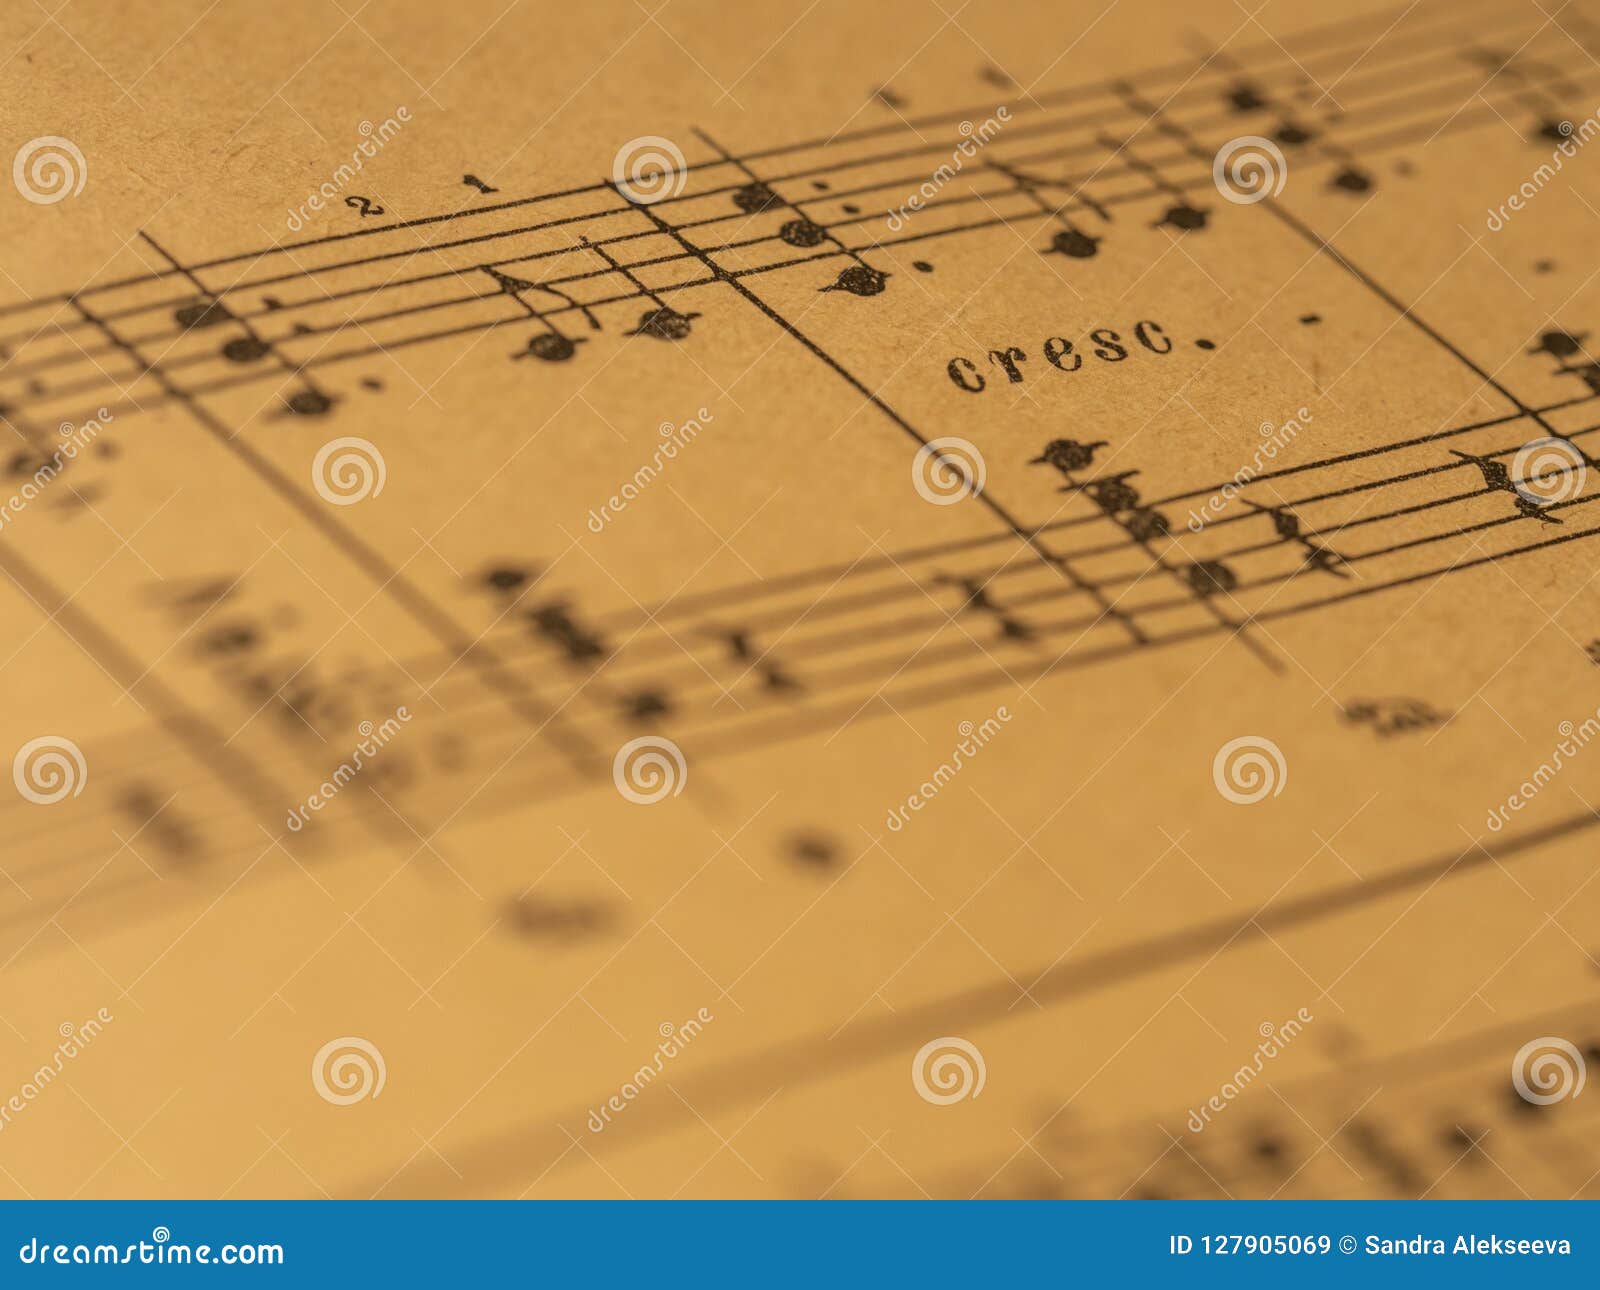 classical print piano score with crescendo mark